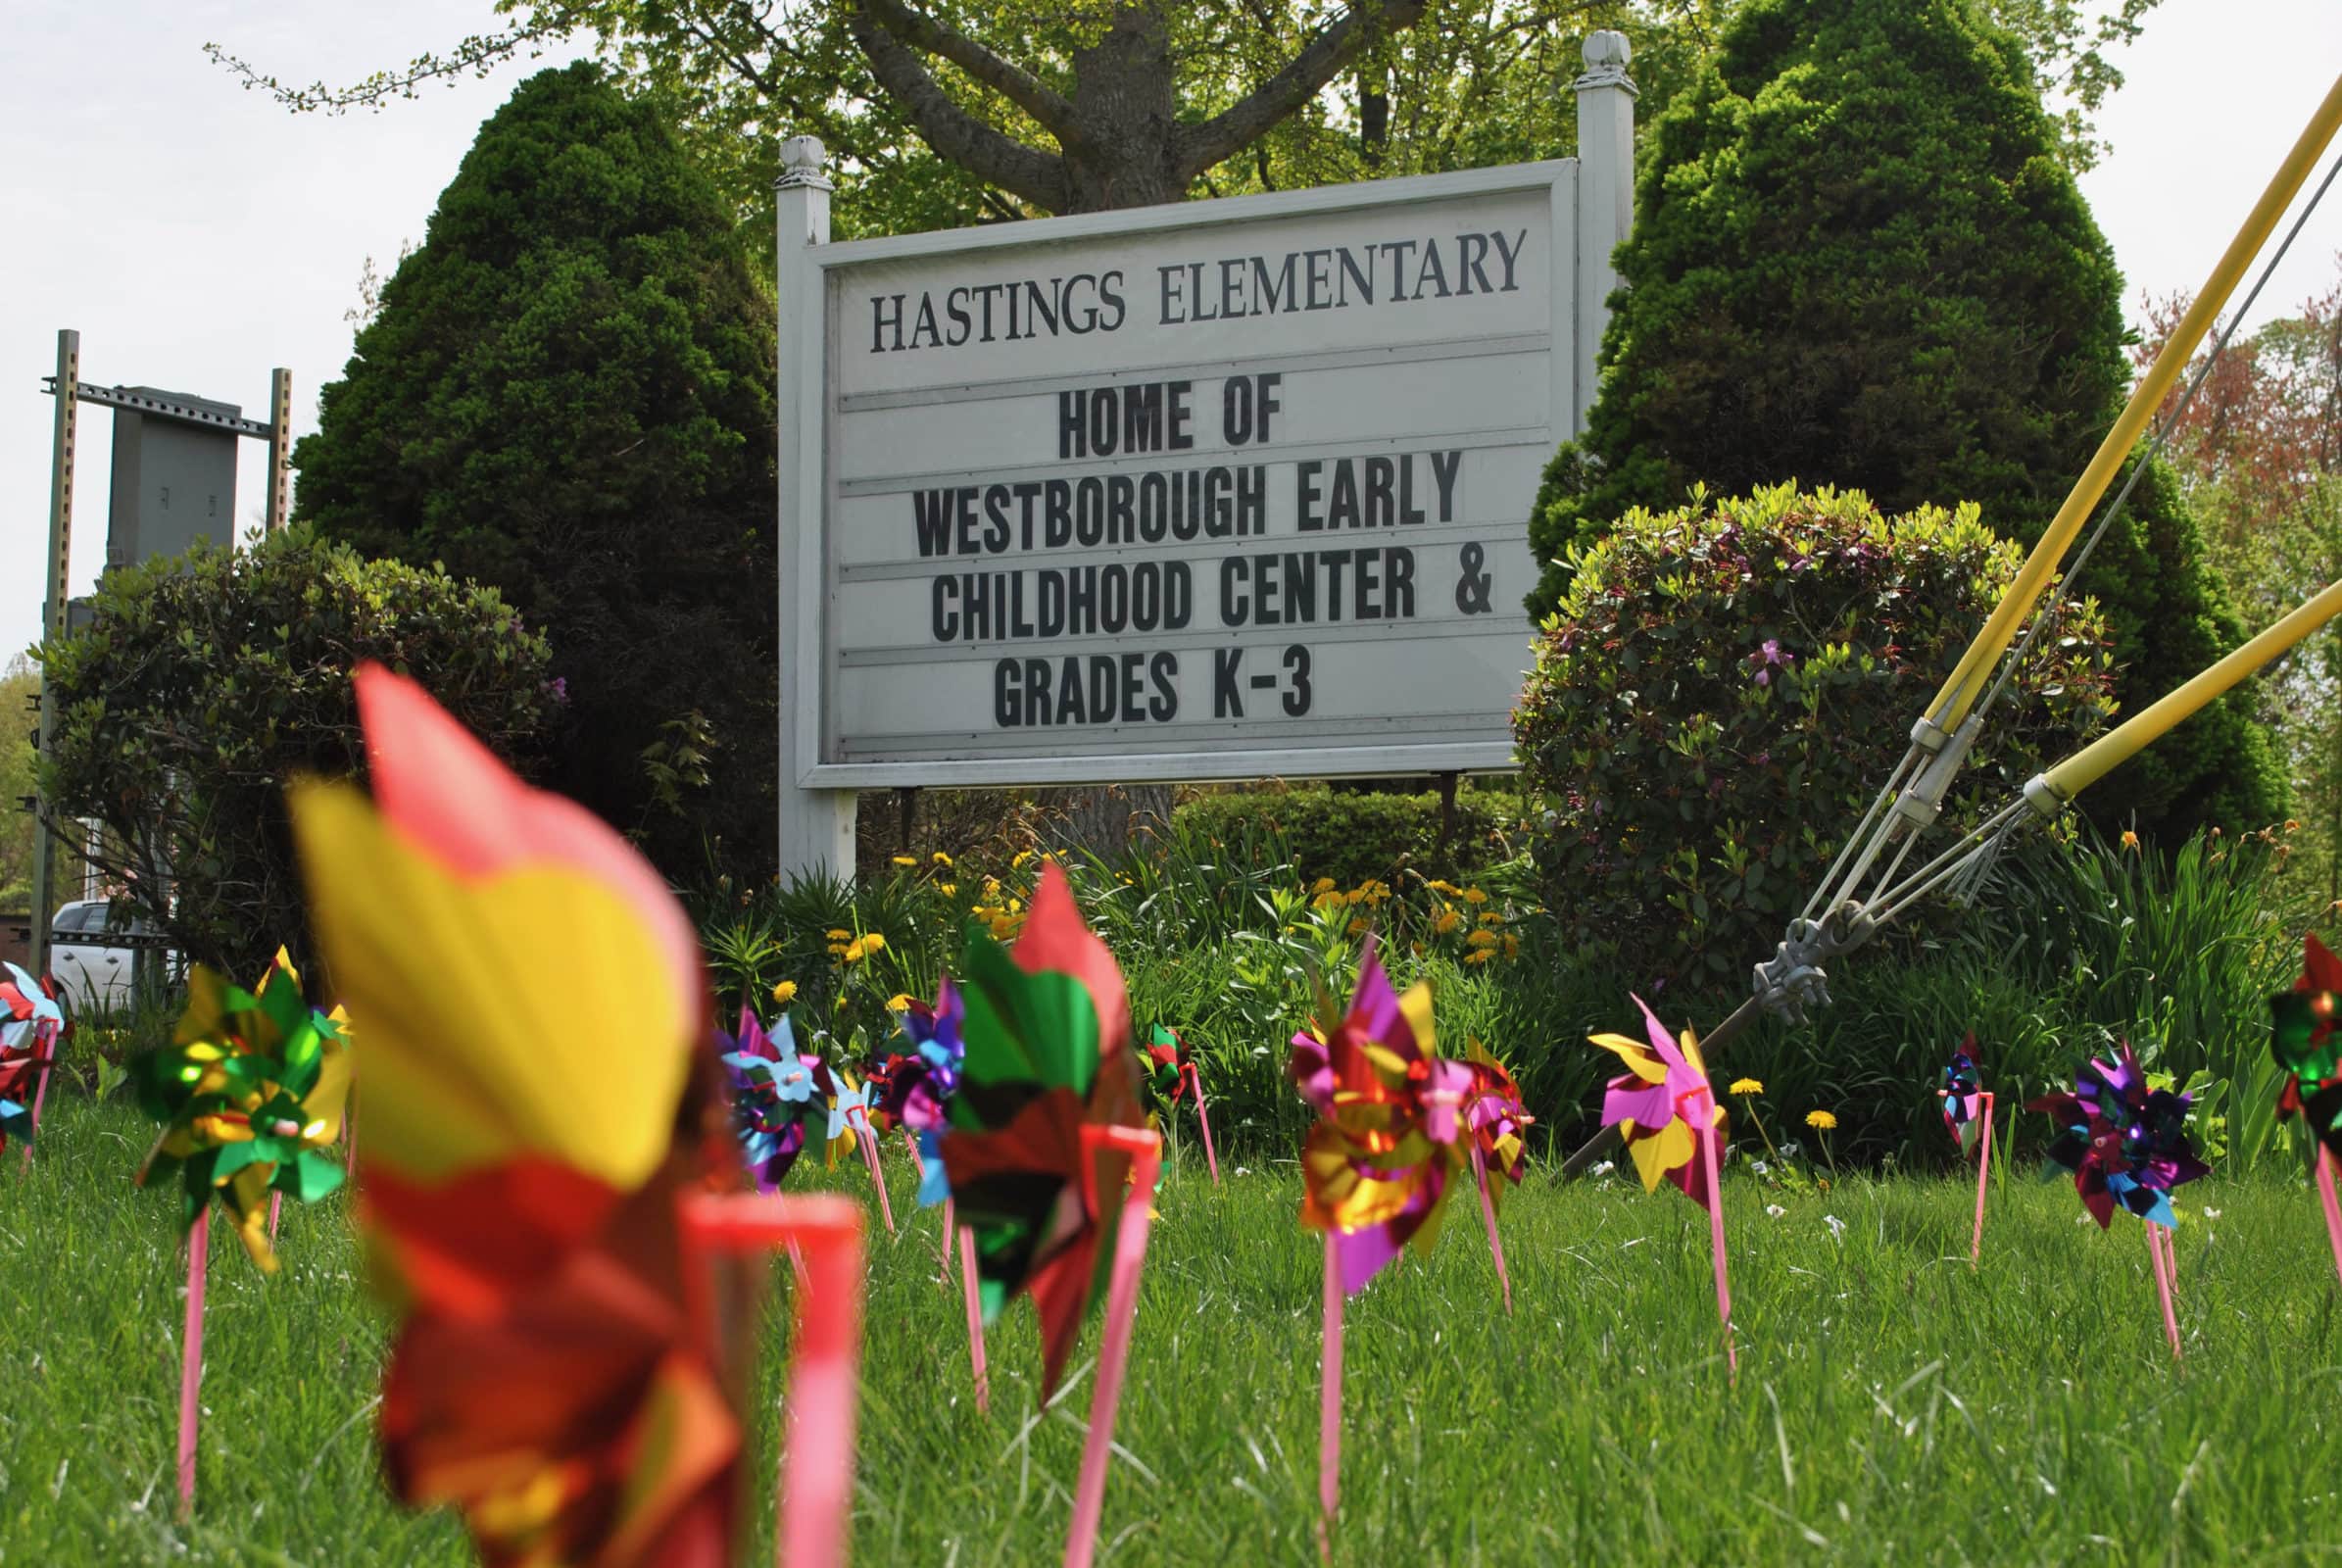 Plant a Gratitude Garden for your favorite Westborough teacher